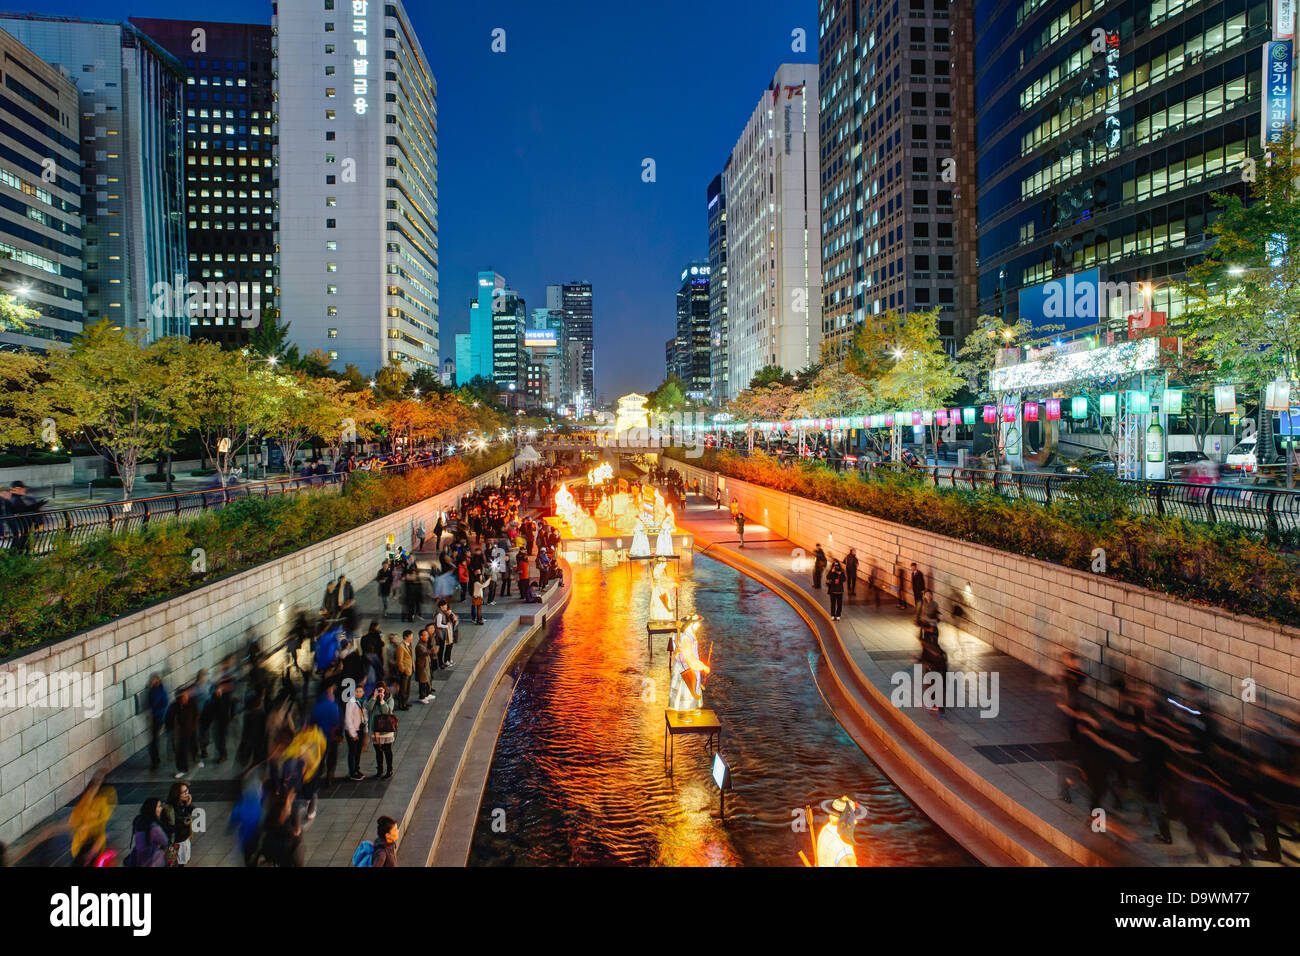 Fête des lanternes qui a lieu chaque année le long de la Cheonggyecheon Stream, Séoul, Corée du Sud, Asie Banque D'Images